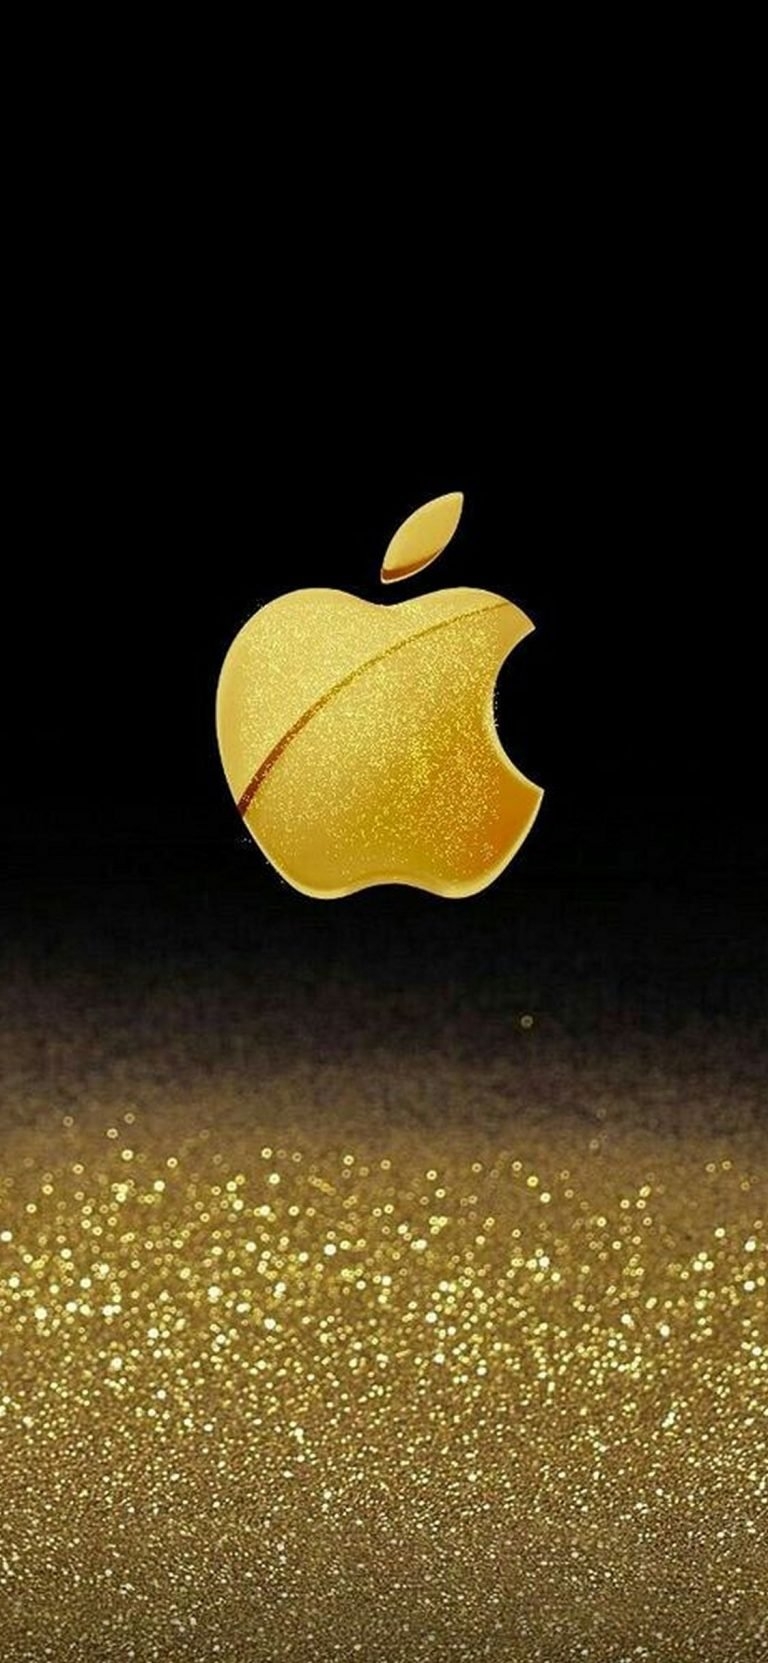 Установить золотое яблоко на телефон. Голд эпл эпл Голд. Золотой айфон. Золотая заставка на айфон. Заставка Apple.